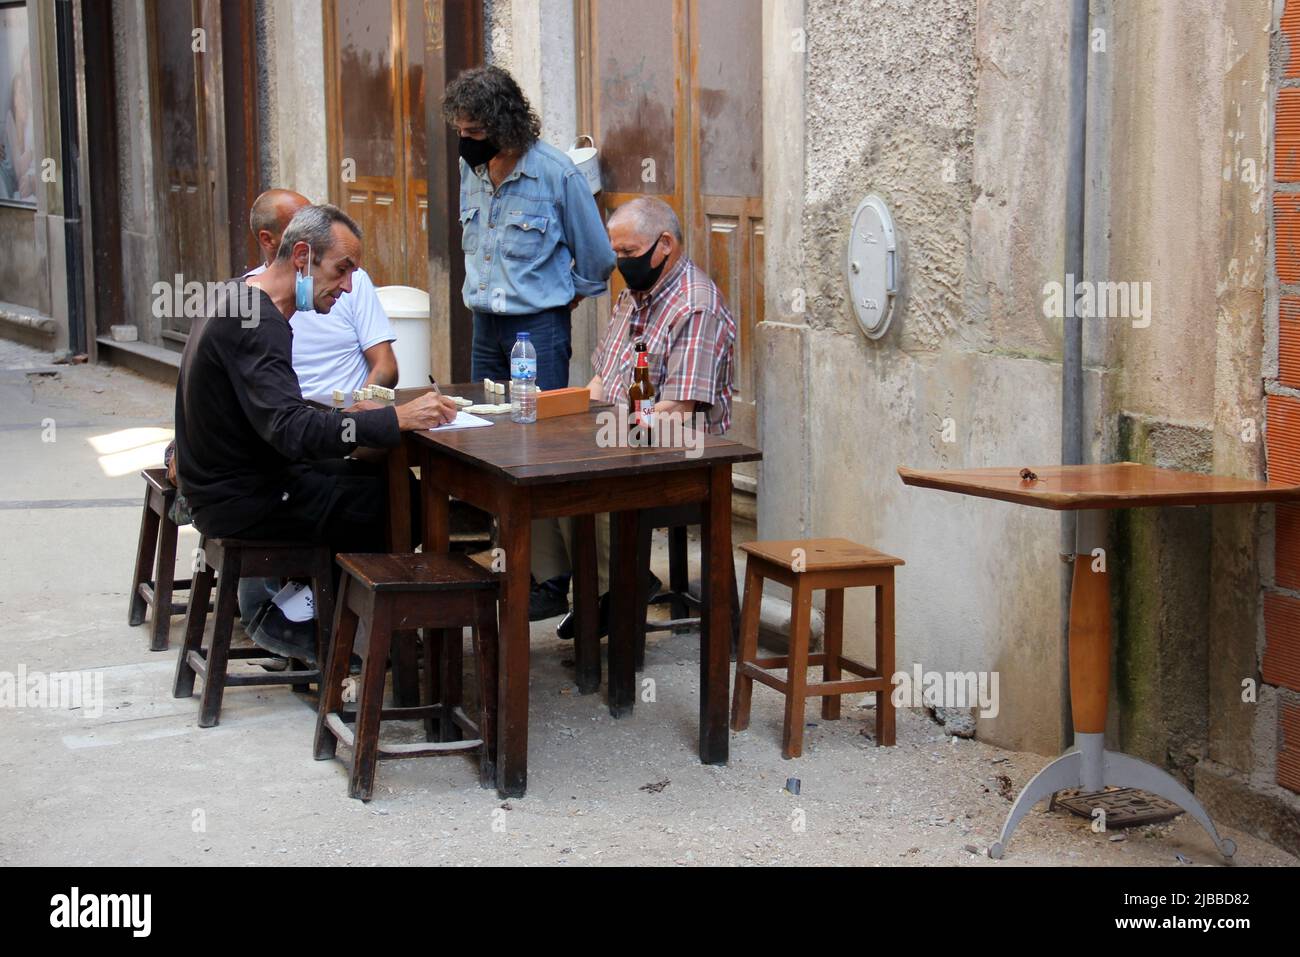 Quatre hommes, portant des masques, jouant au jeu de dominos à une table en bois dans la rue de la vieille ville, Coimbra, Portugal Banque D'Images